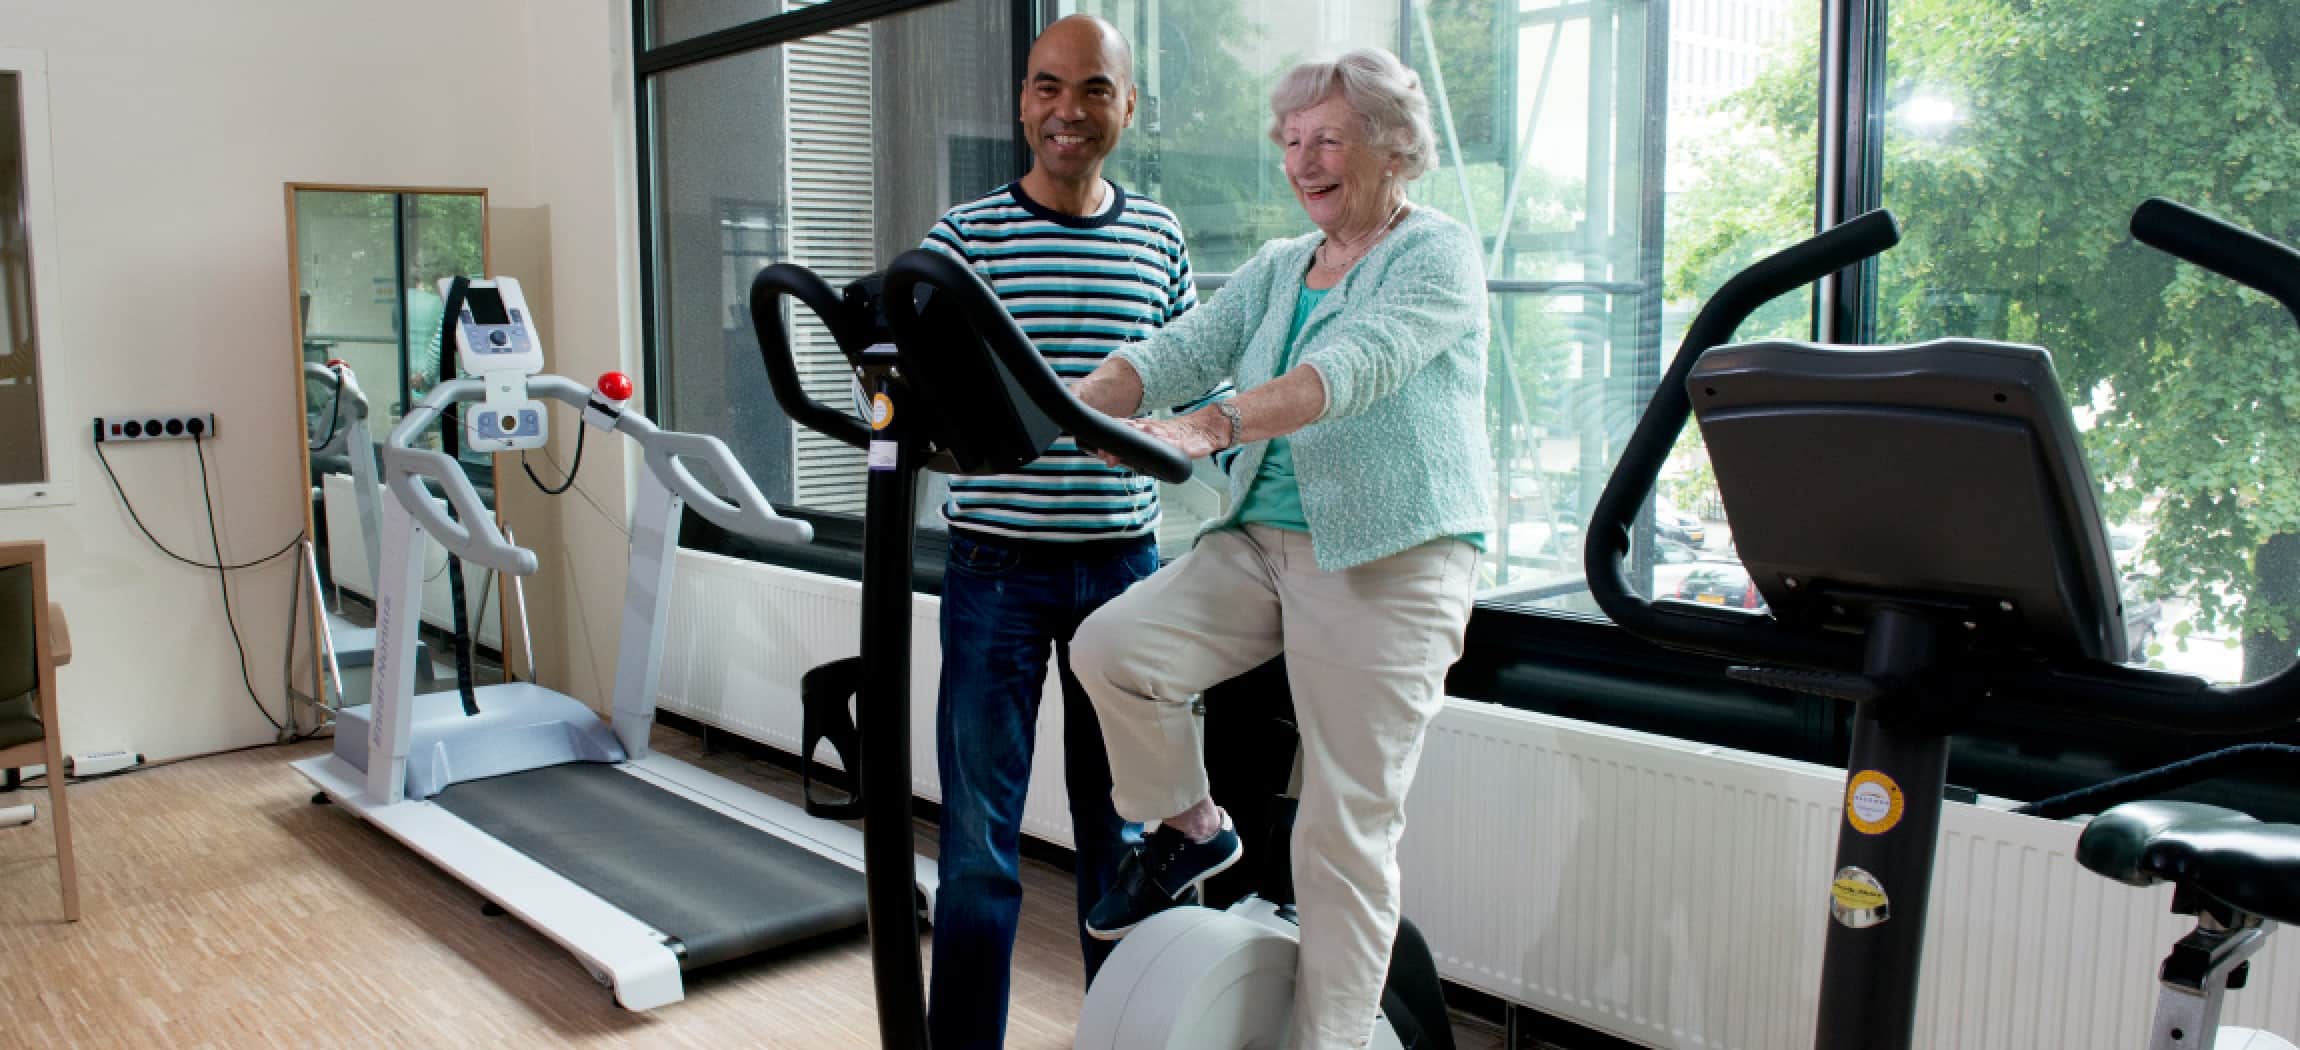 Ergotherapie oefenzaal fitness fiets oude vrouw met fysiotherapeut man